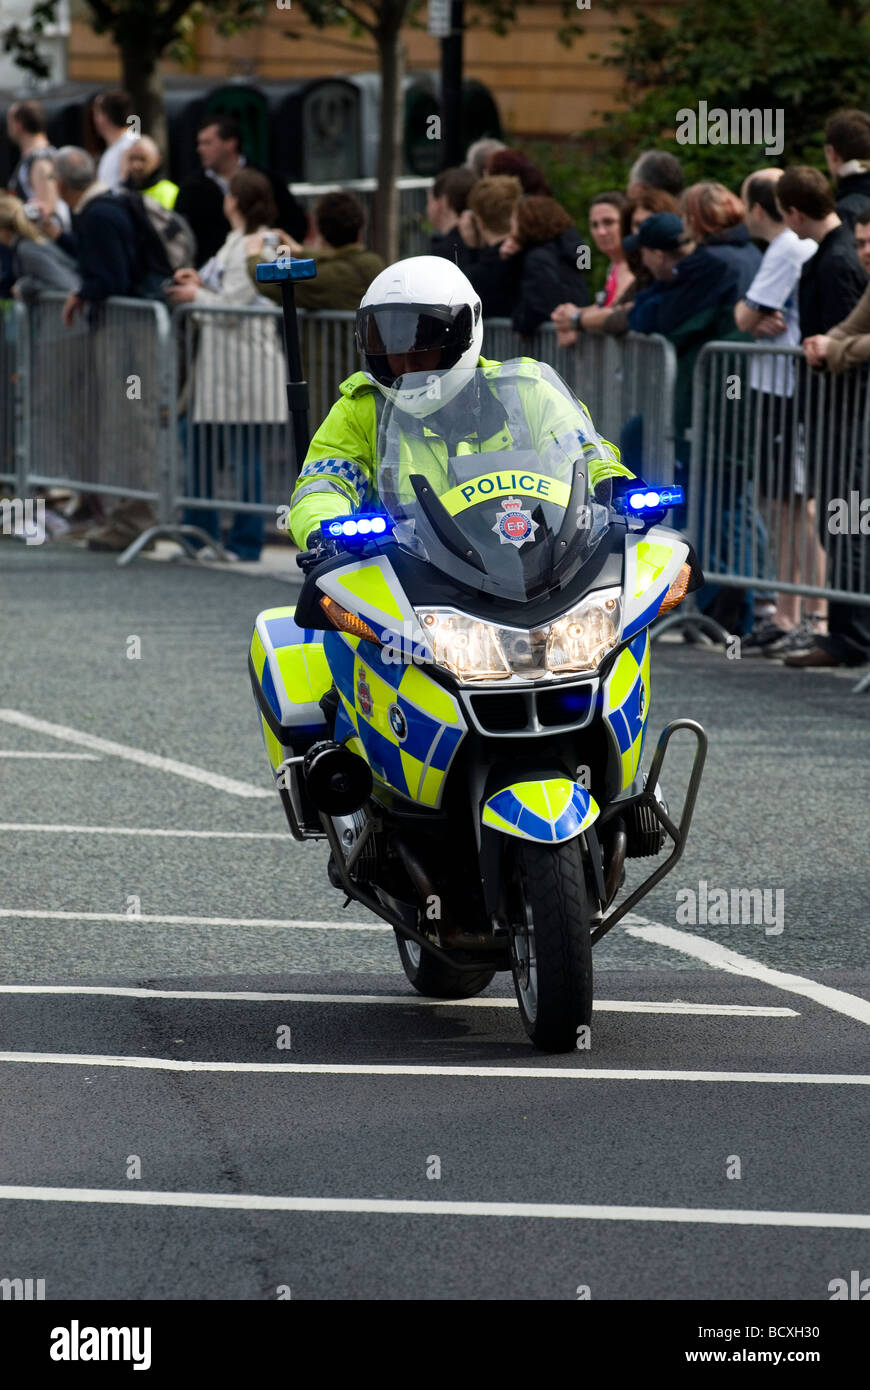 La conduite de la police moto dans le centre-ville de Manchester UK Banque D'Images